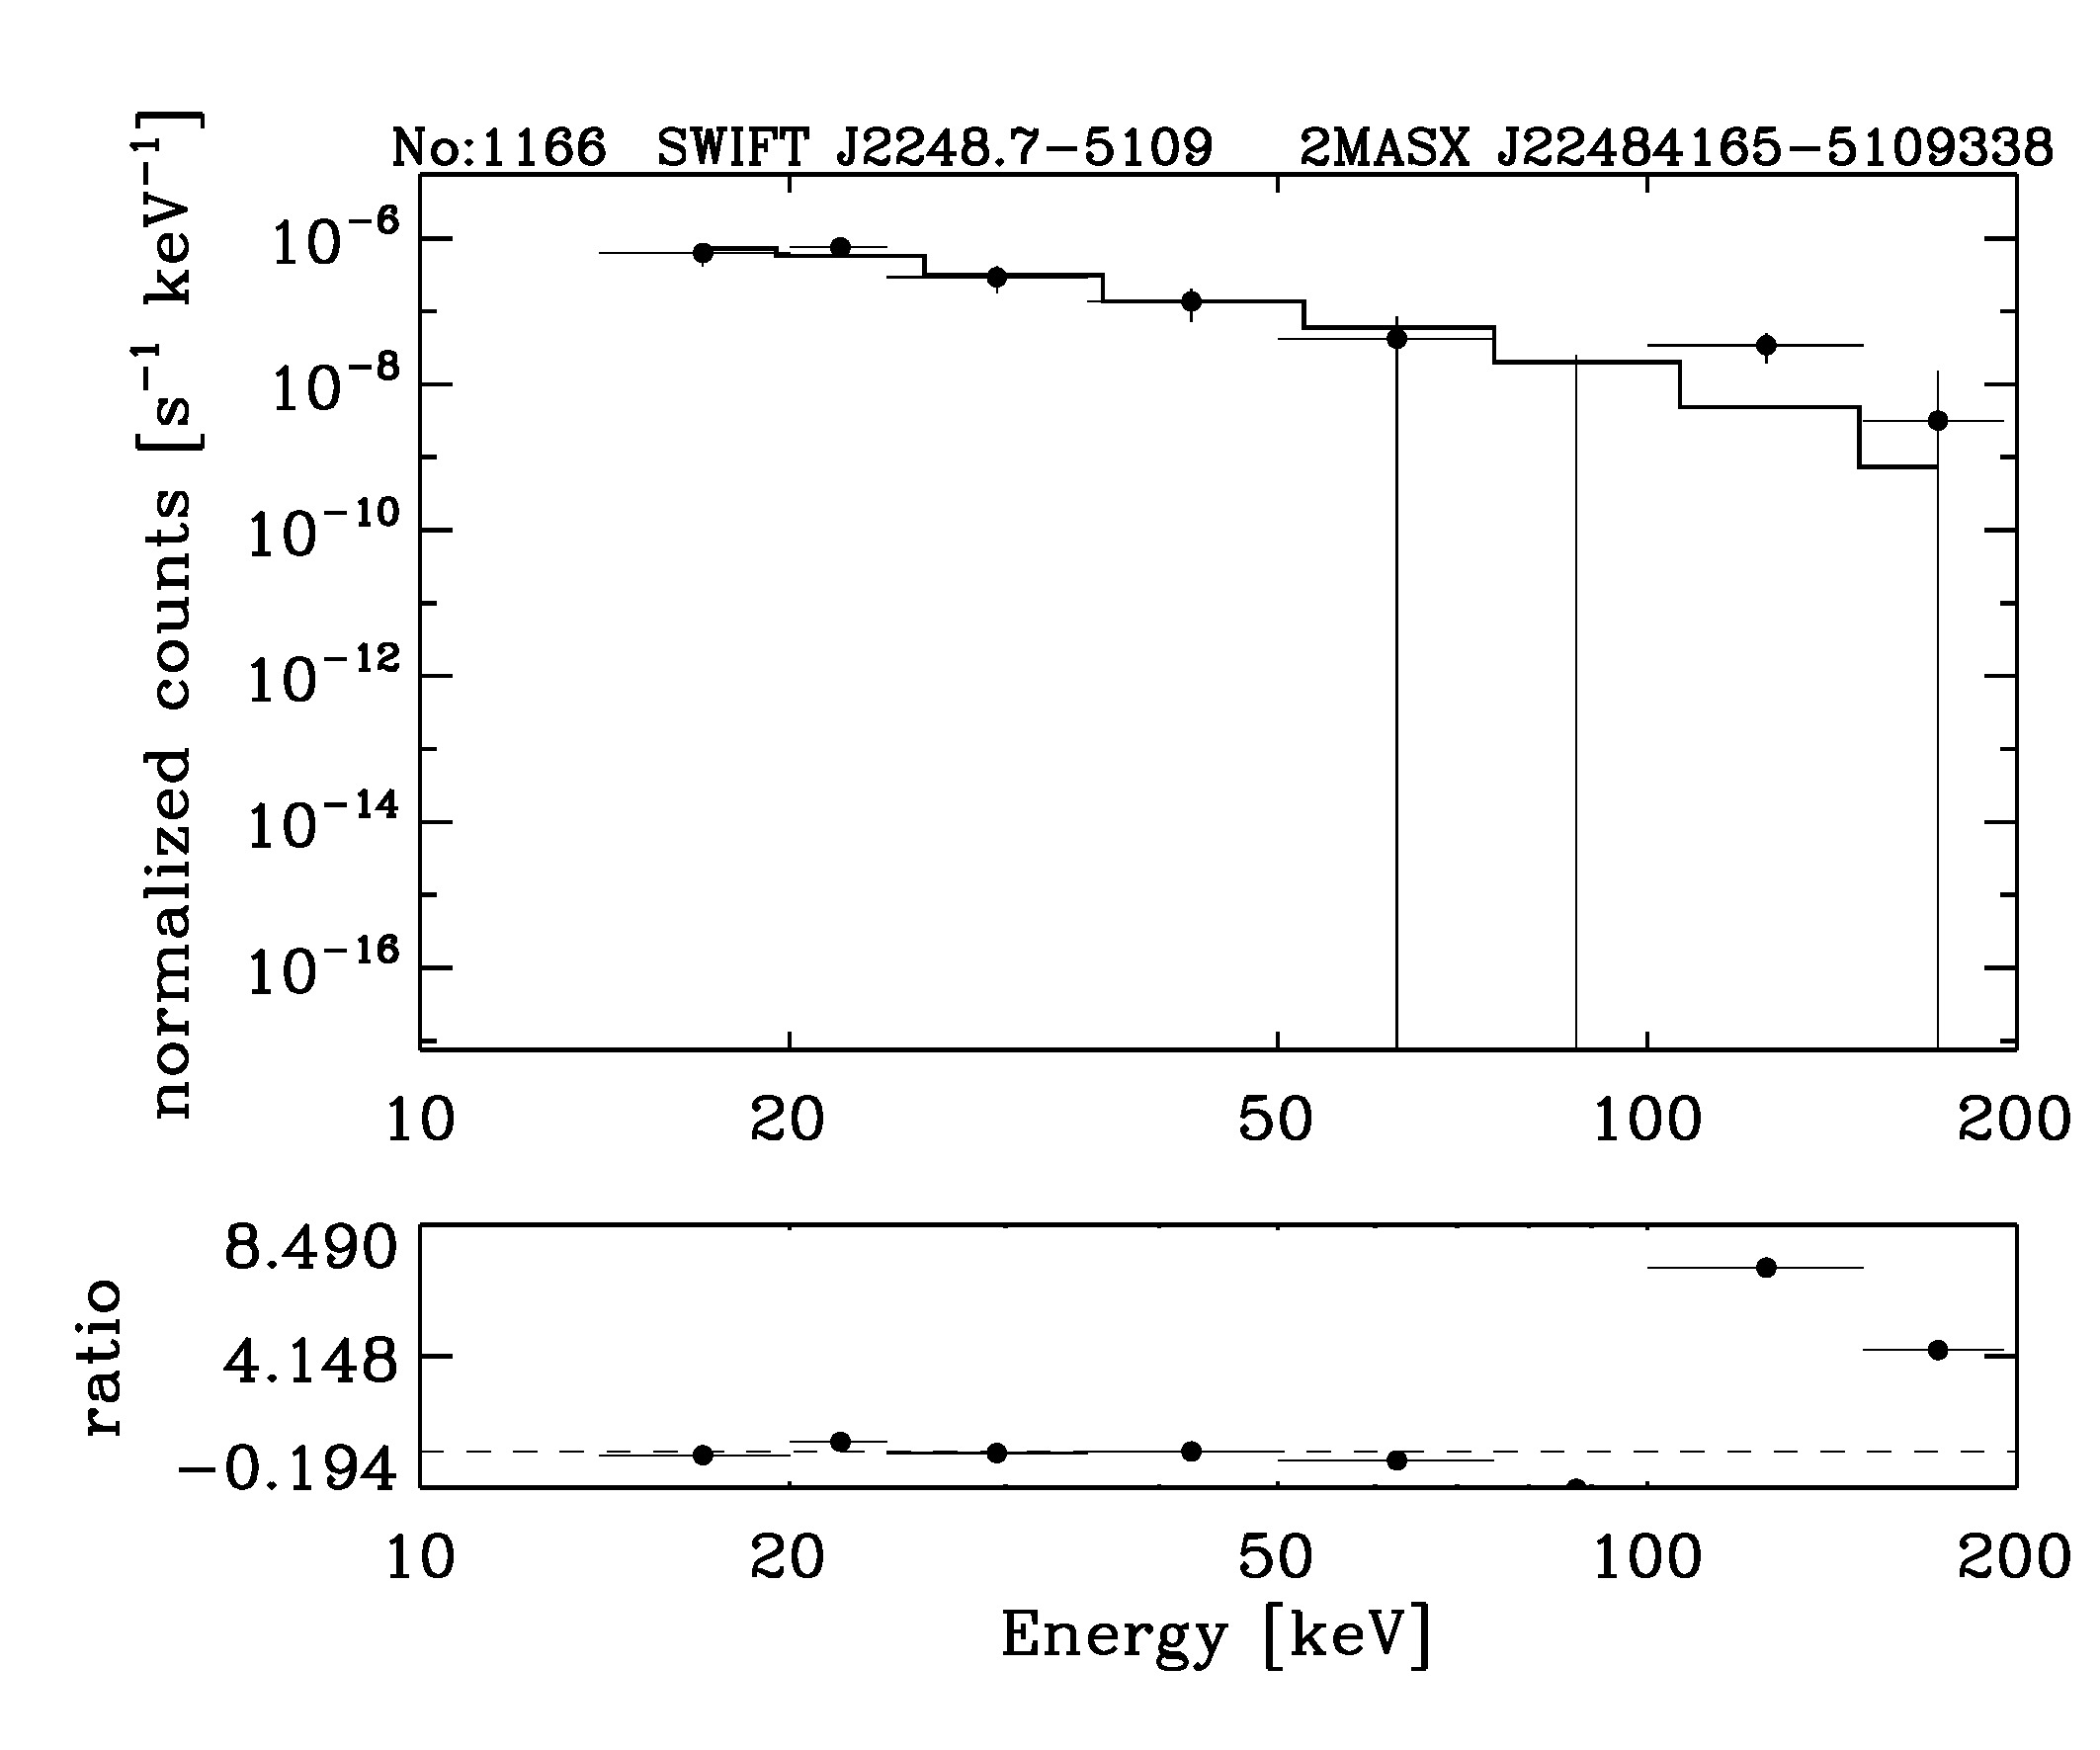 BAT Spectrum for SWIFT J2248.7-5109